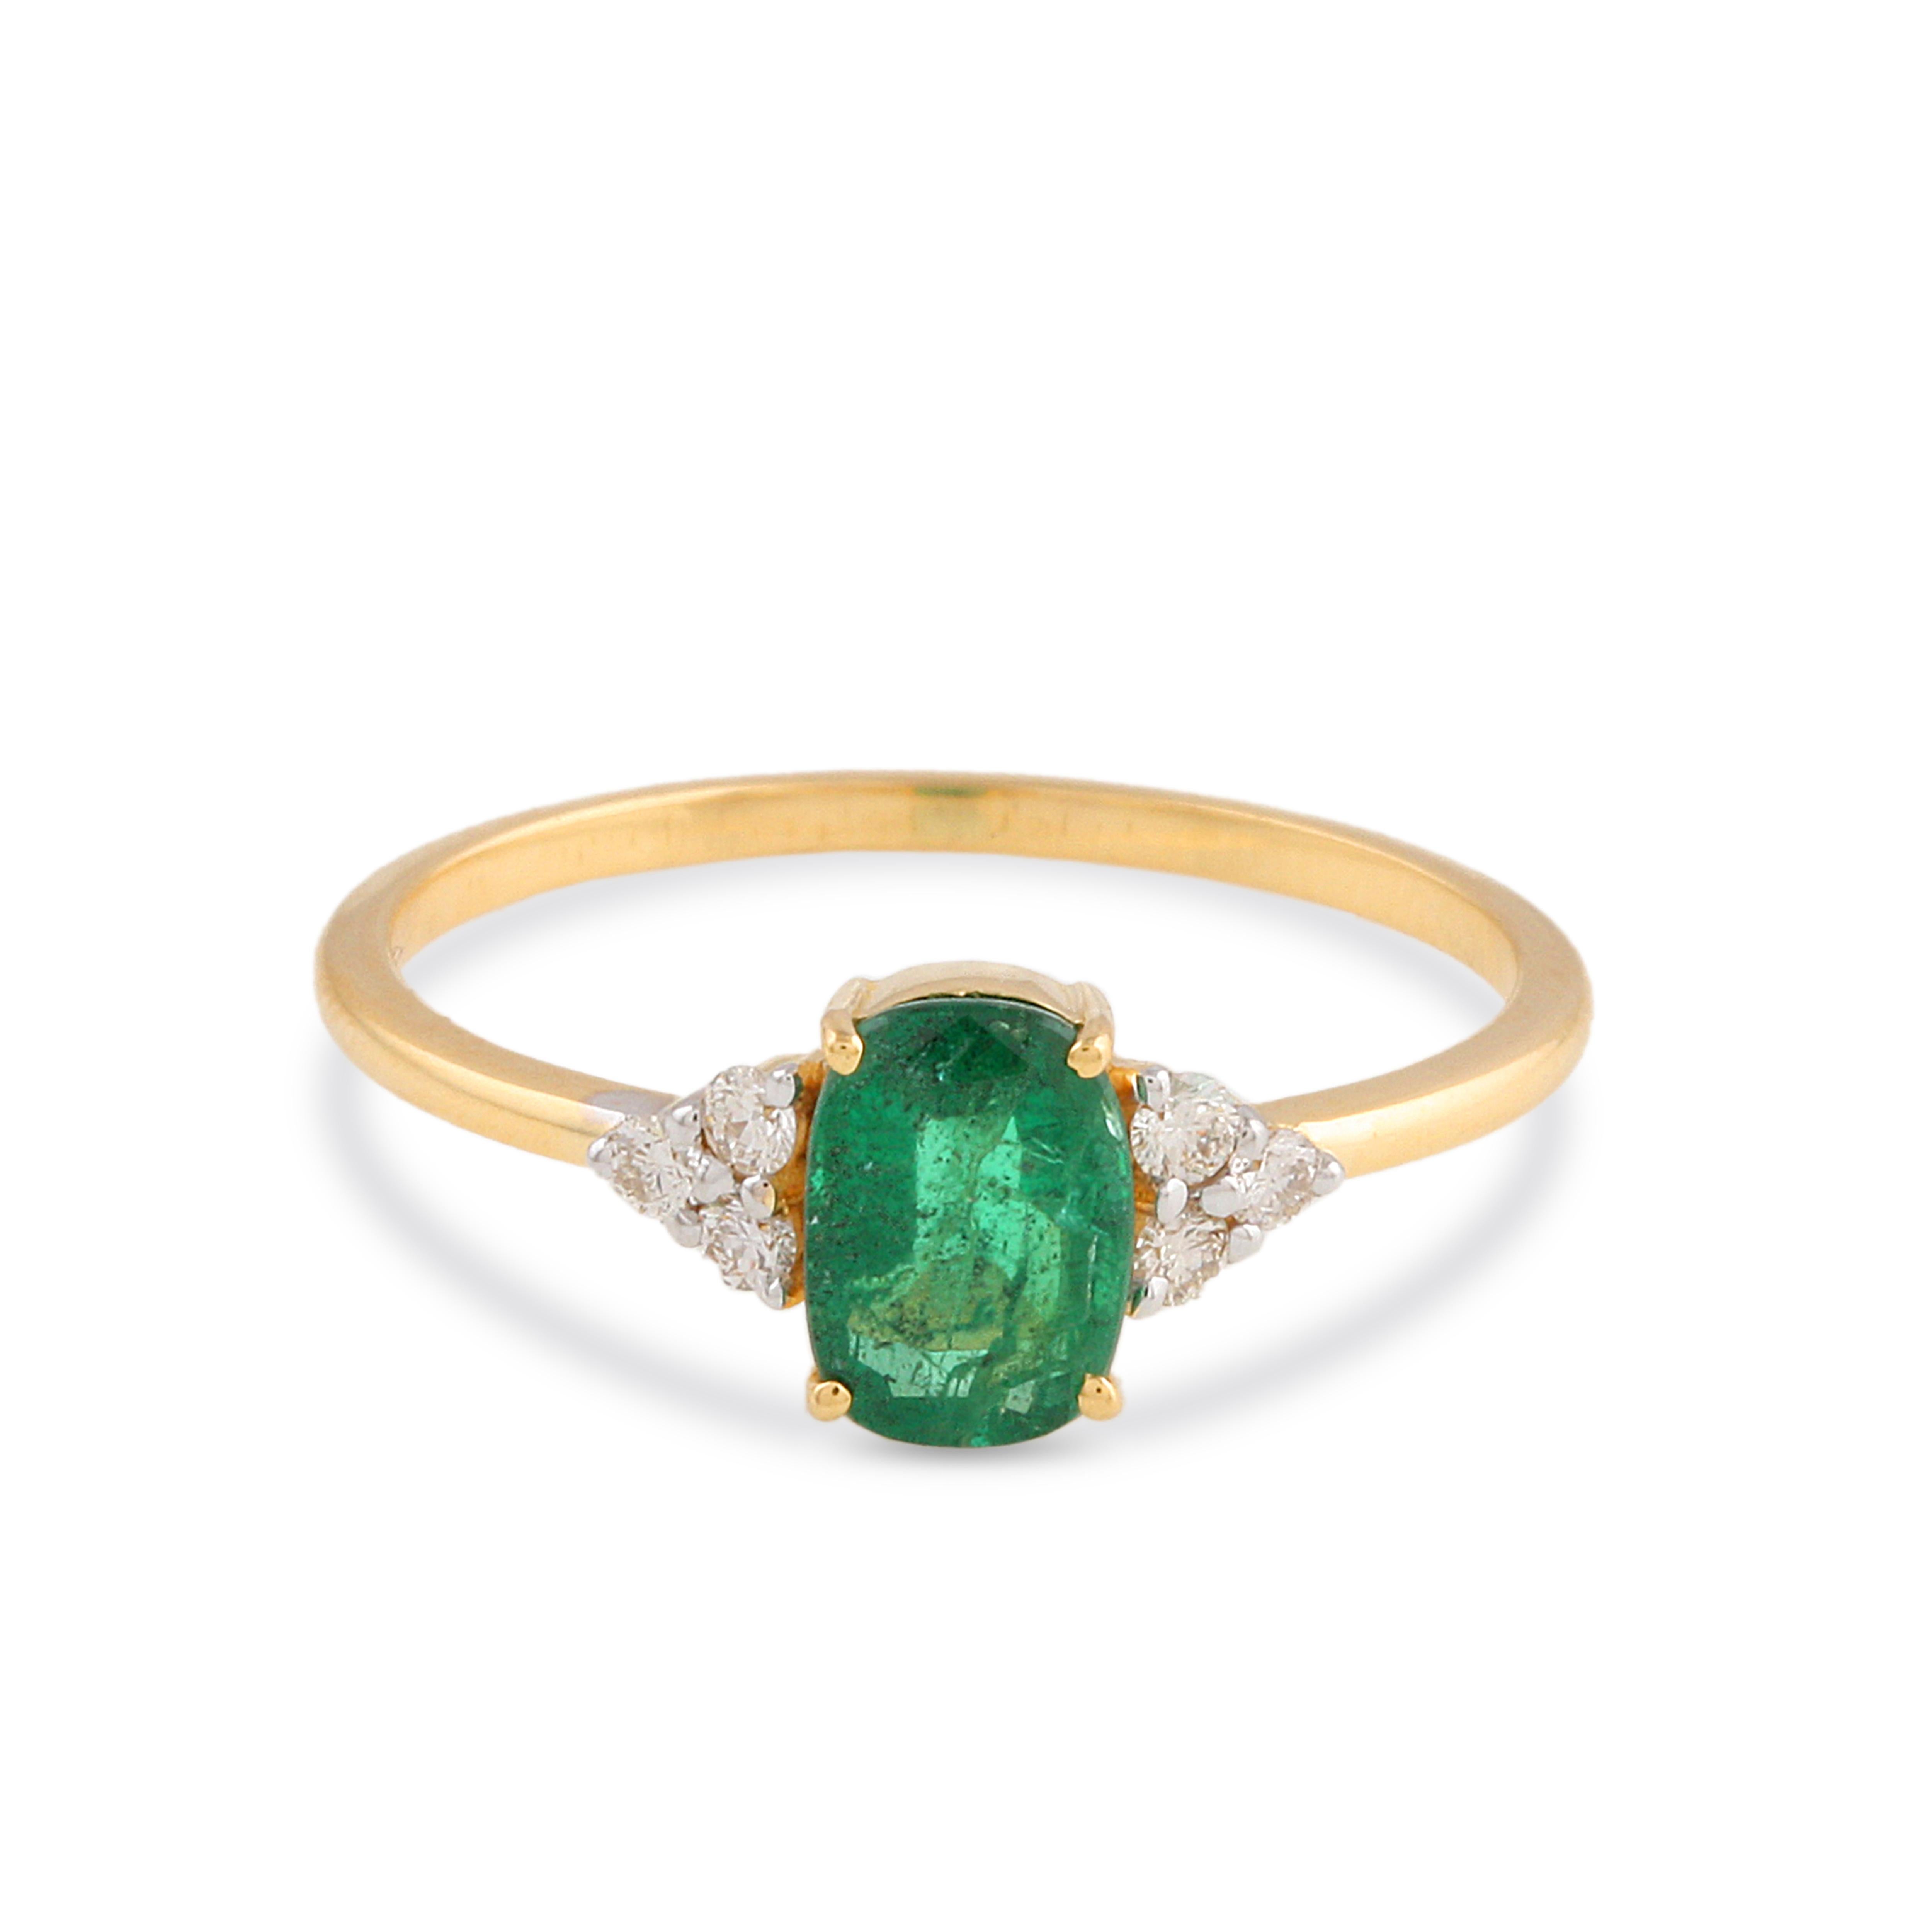 Tresor Beautiful Ring mit 0,65 Karat Smaragd und 0,05 Karat Diamant. Die Ringe sind eine Ode an die luxuriöse und doch klassische Schönheit mit funkelnden Edelsteinen und femininen Farbtönen. Ihr zeitgemäßes und modernes Design macht sie perfekt und